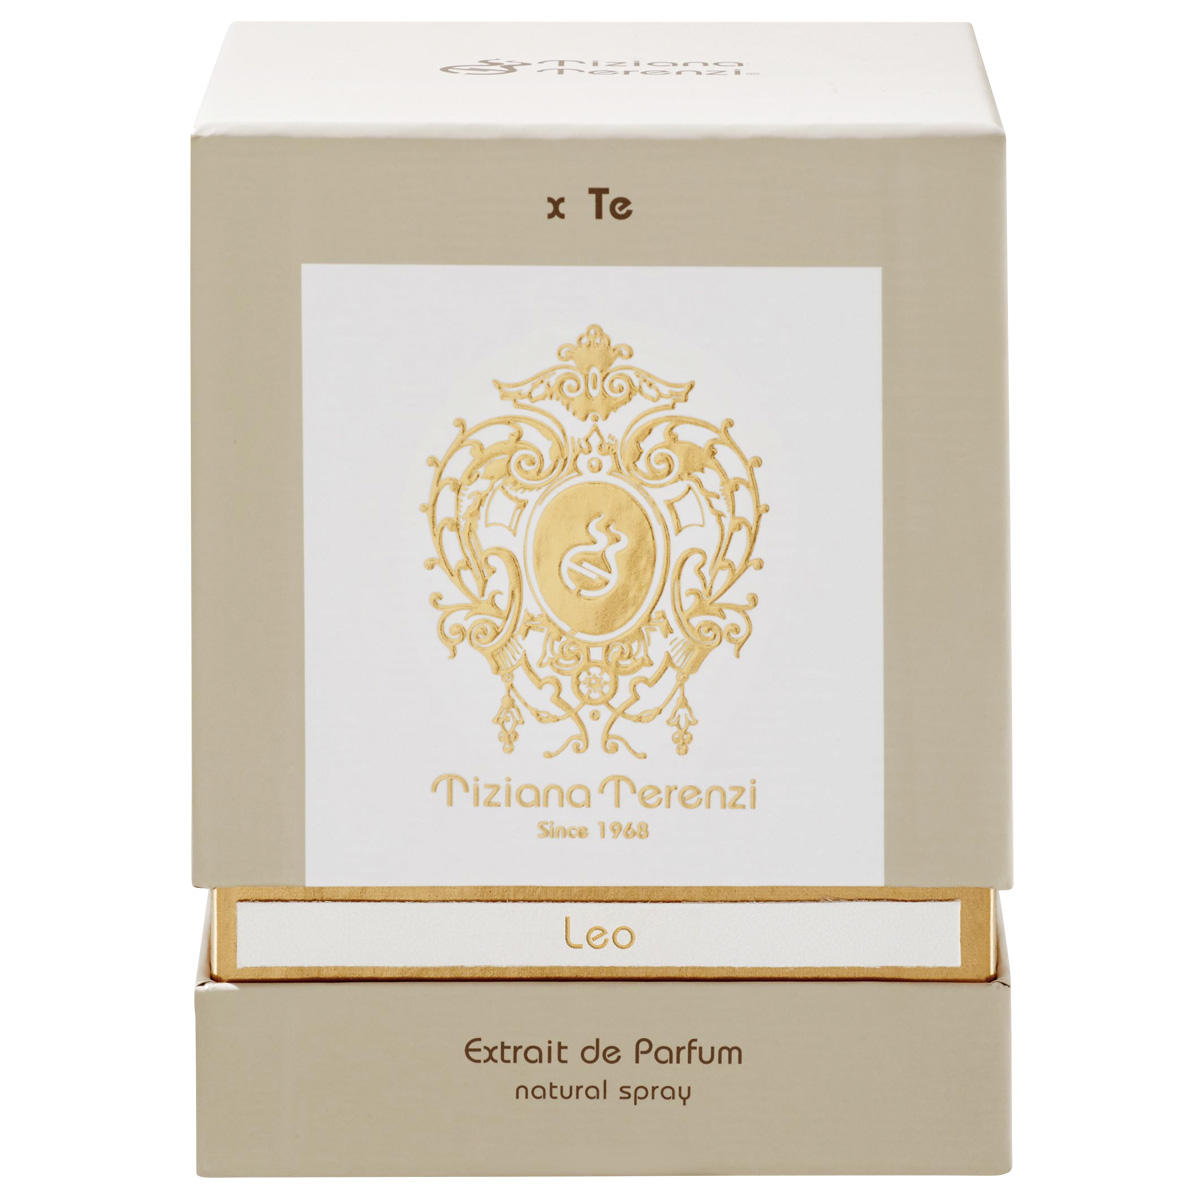 Tiziana Terenzi Leo Extrait de Parfum 100 ml - 2